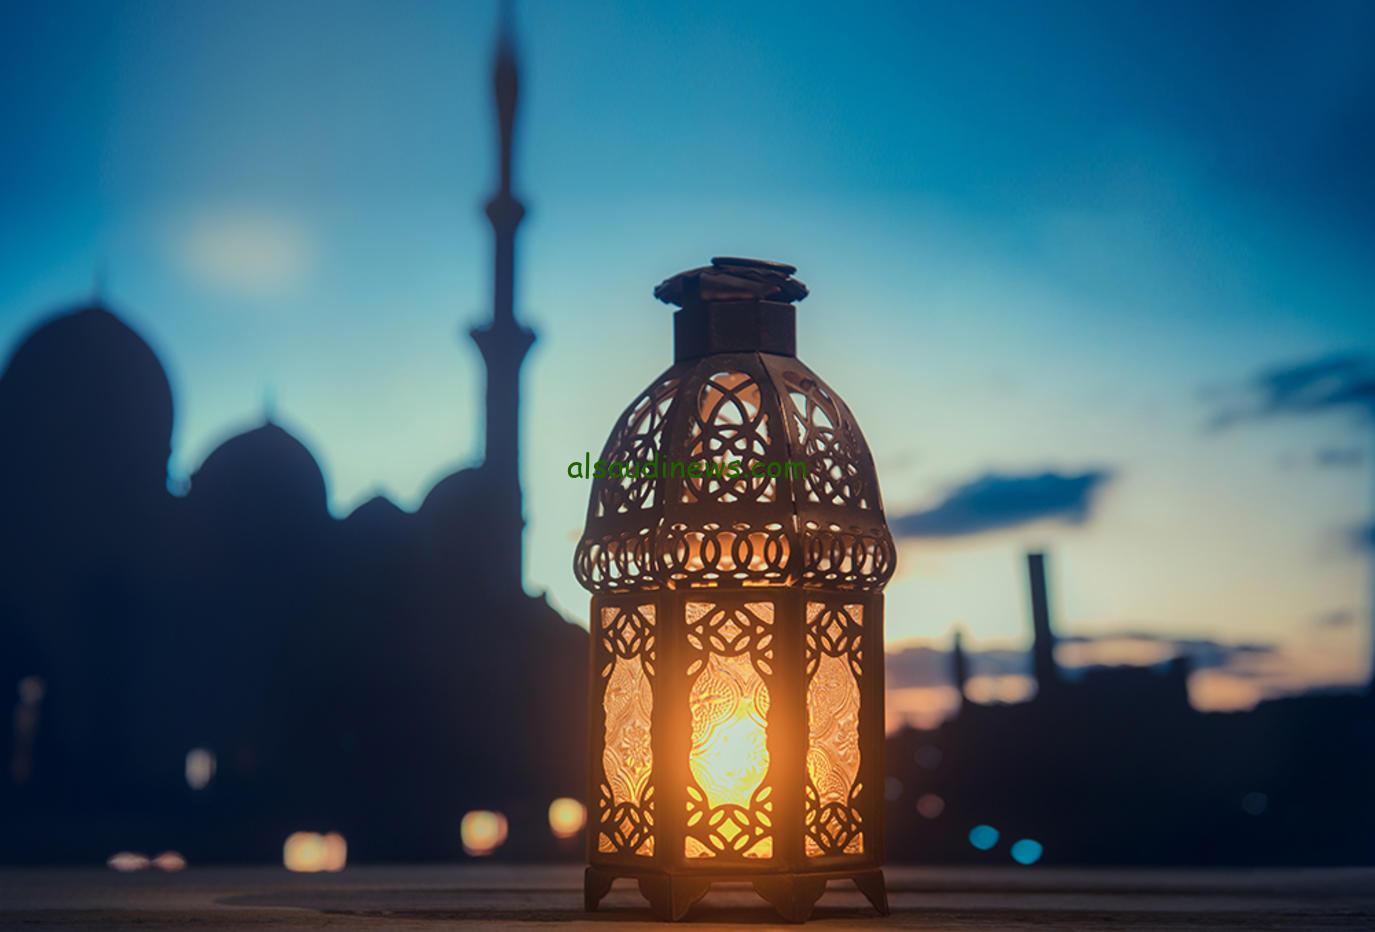 تهنئة لاقتراب شهر رمضان المبارك رمضان امتى؟